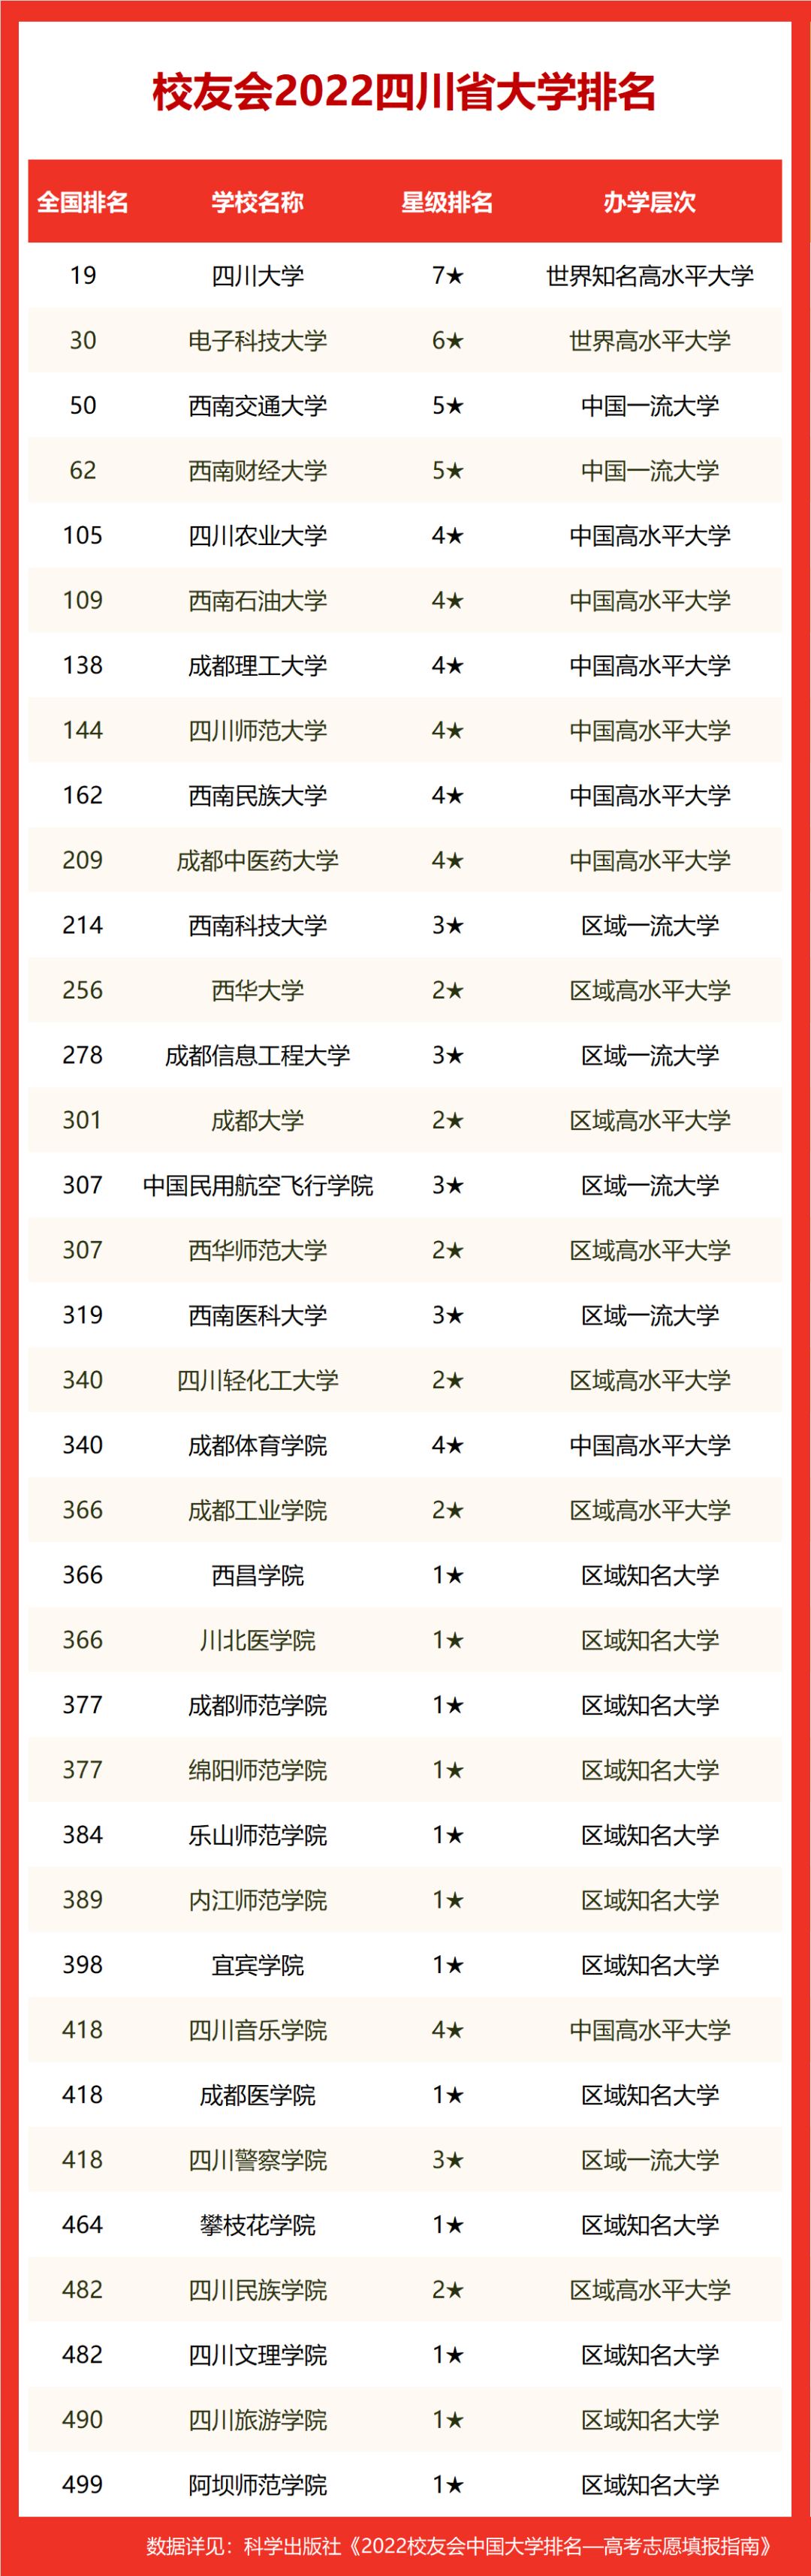 2022校友会四川省大学排名四川大学第一电子科技大学挺进全国30强